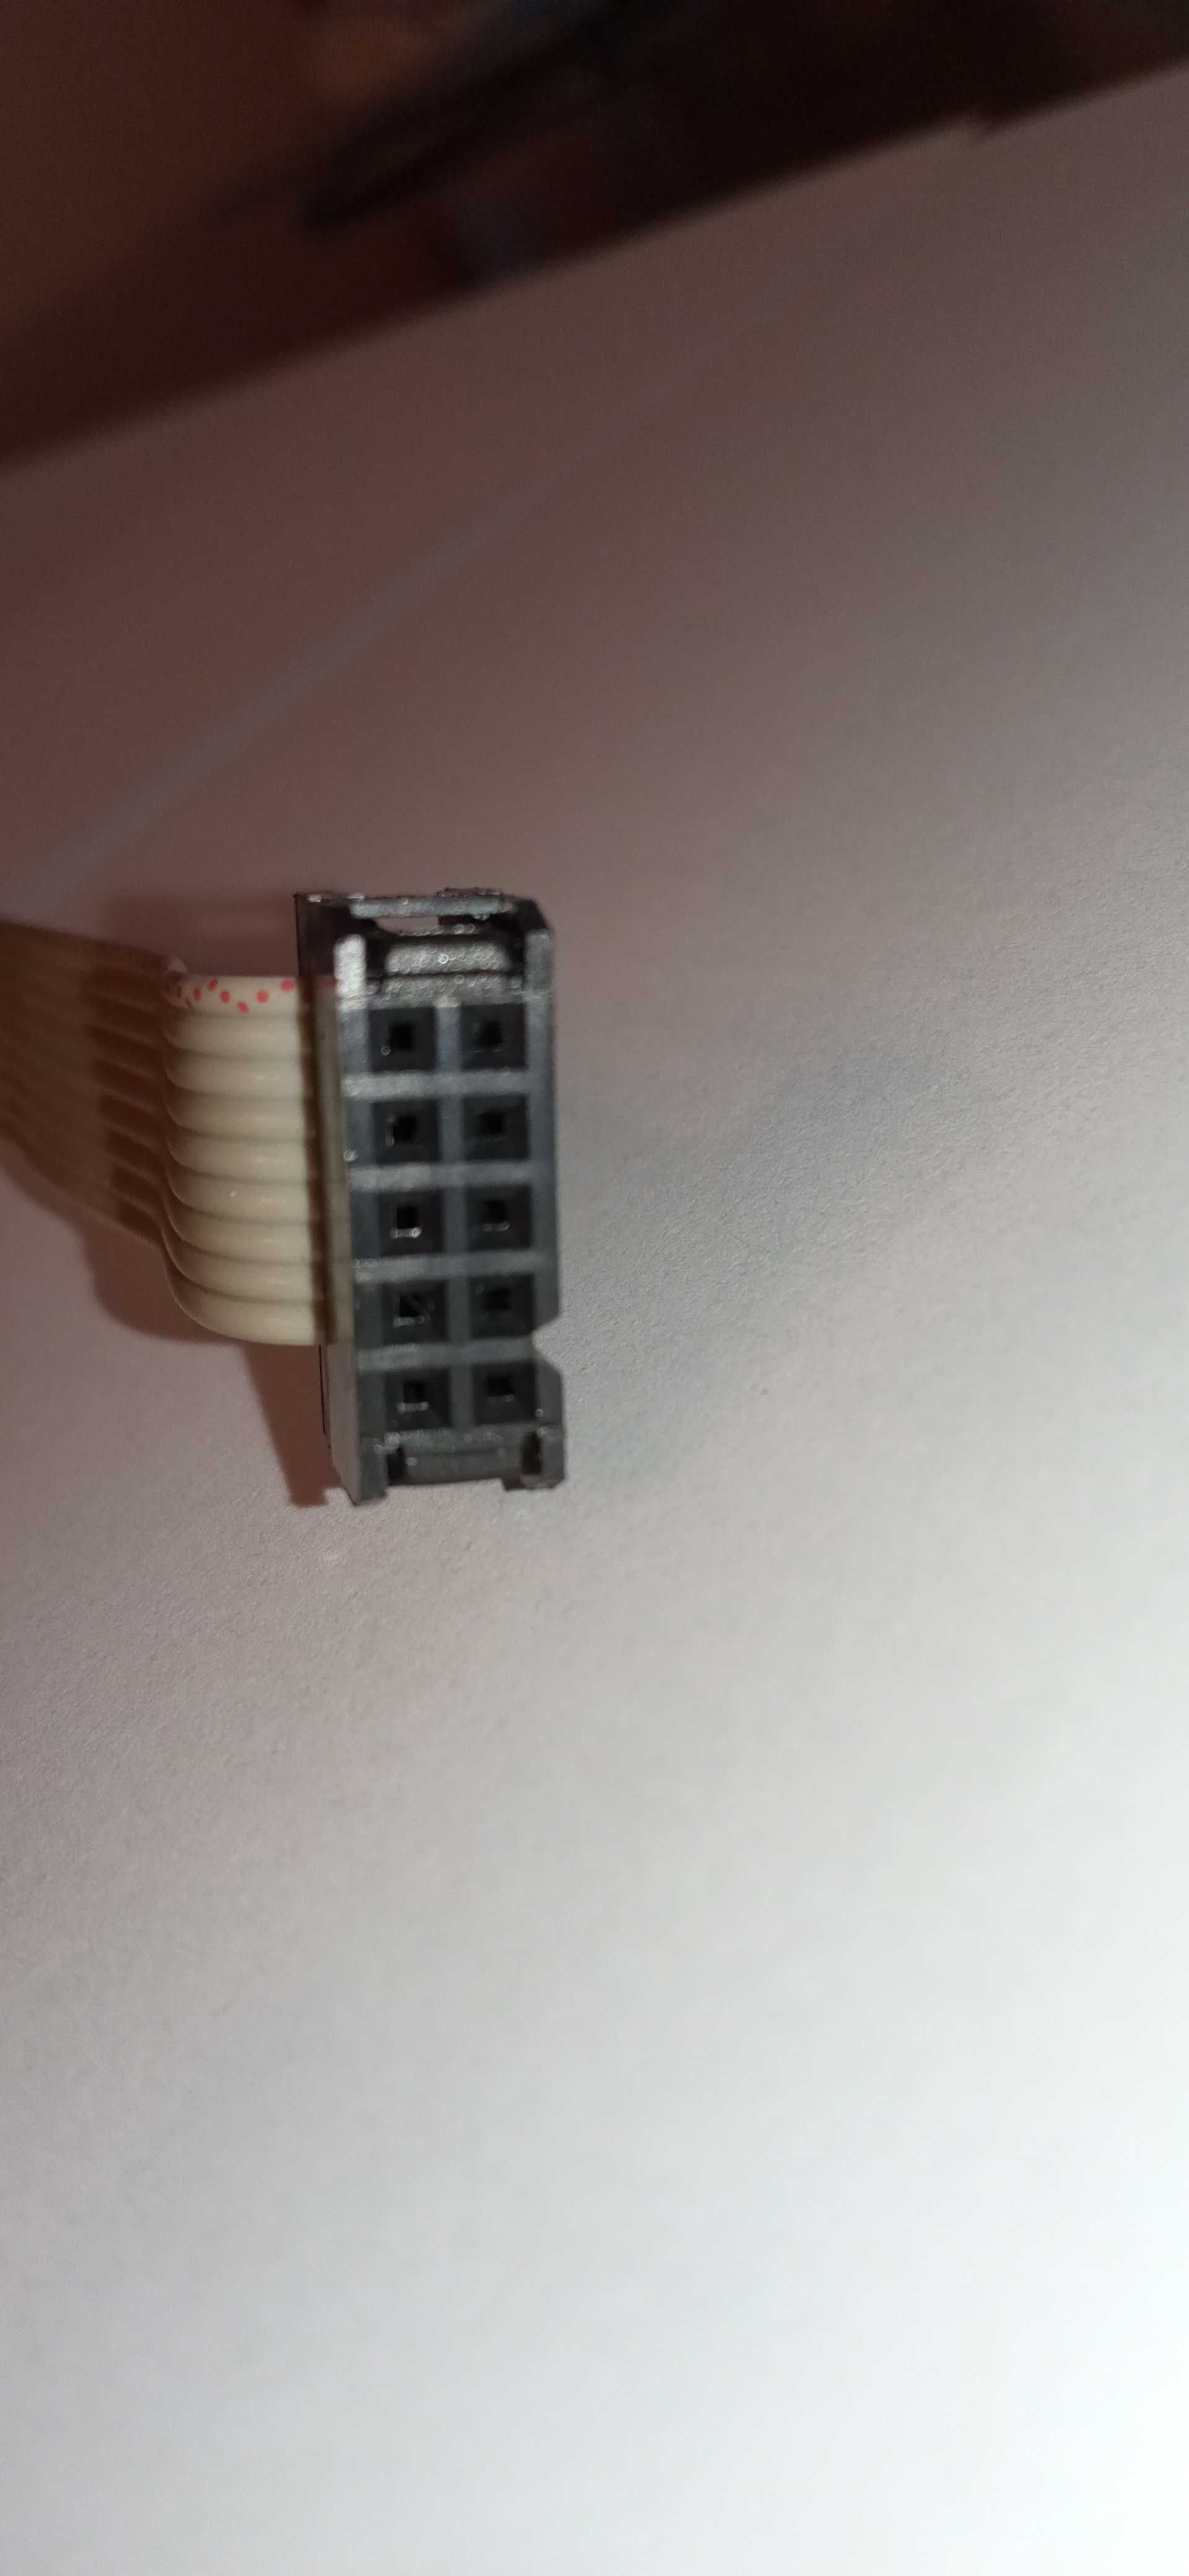 Port szeregowy RS-232, DB25 - 25 pin na kablu do płyty głównej